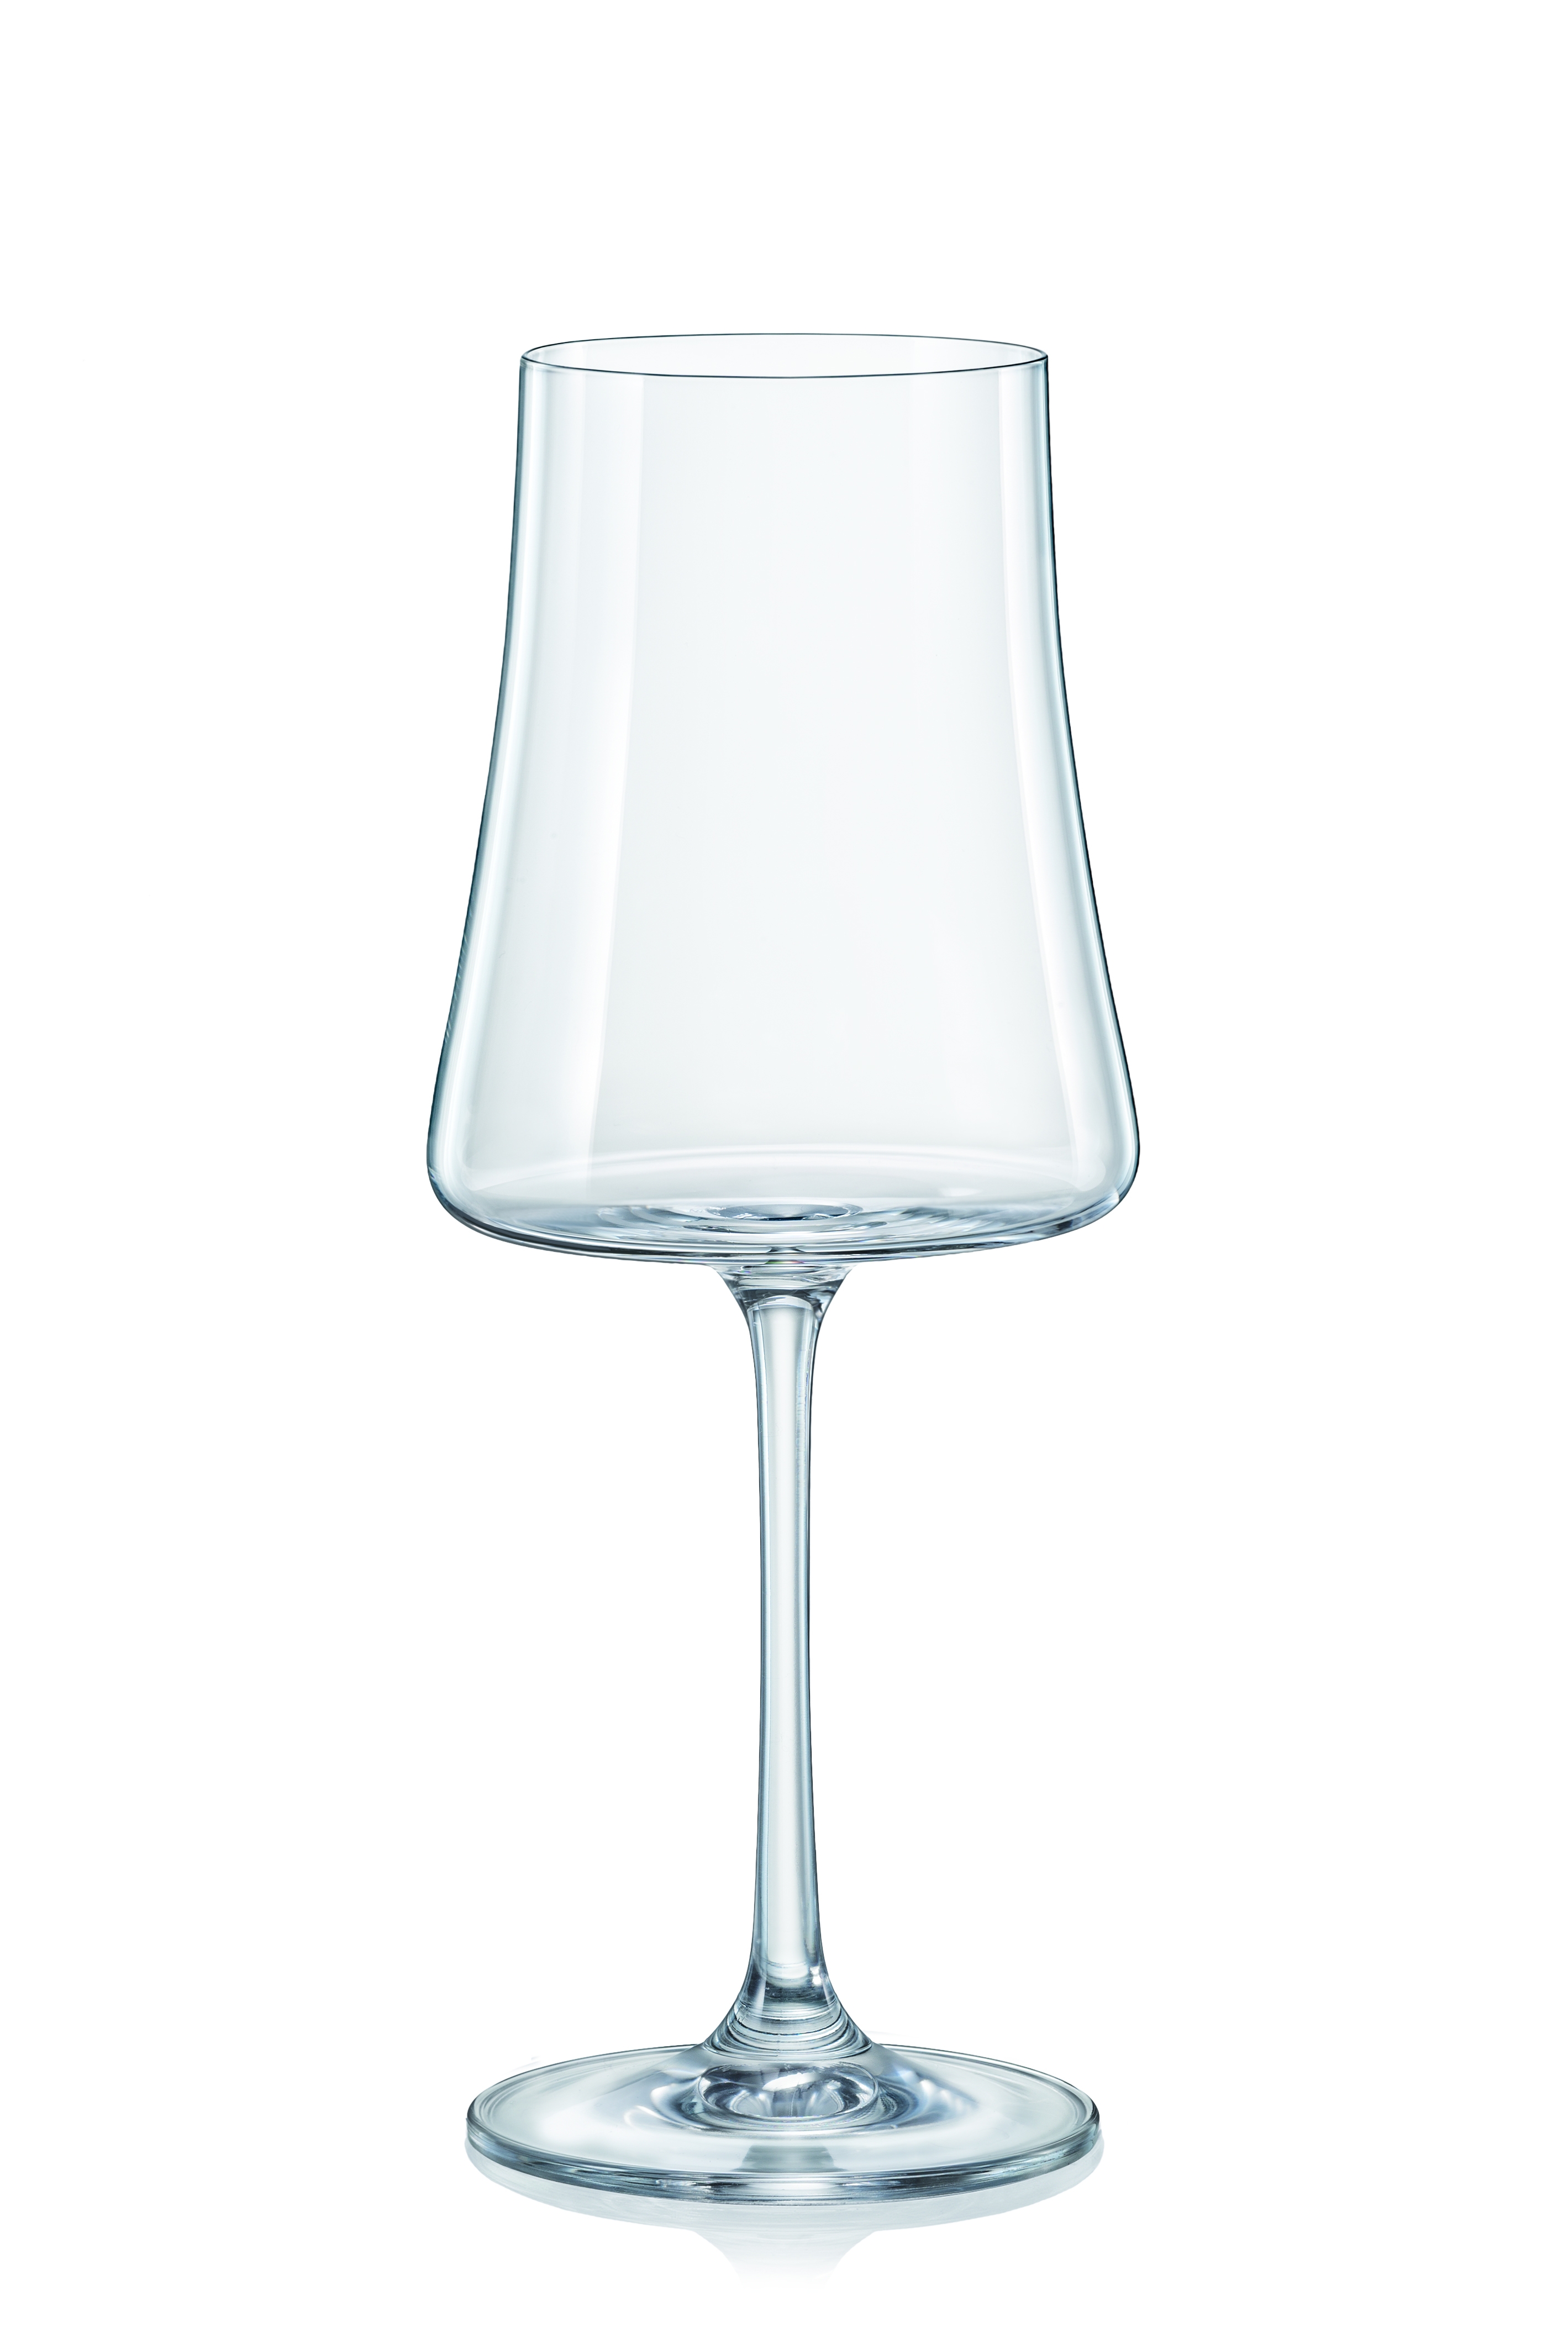 Κρύσταλλα Βοημίας Ποτήρι Κρασιού Κρυστάλλινο Bohemia Xtra 460ml CLX40862460 (Σετ 6 Τεμάχια) (Υλικό: Κρύσταλλο, Χρώμα: Διάφανο , Μέγεθος: Κολωνάτο) - Κρύσταλλα Βοημίας - CLX40862460